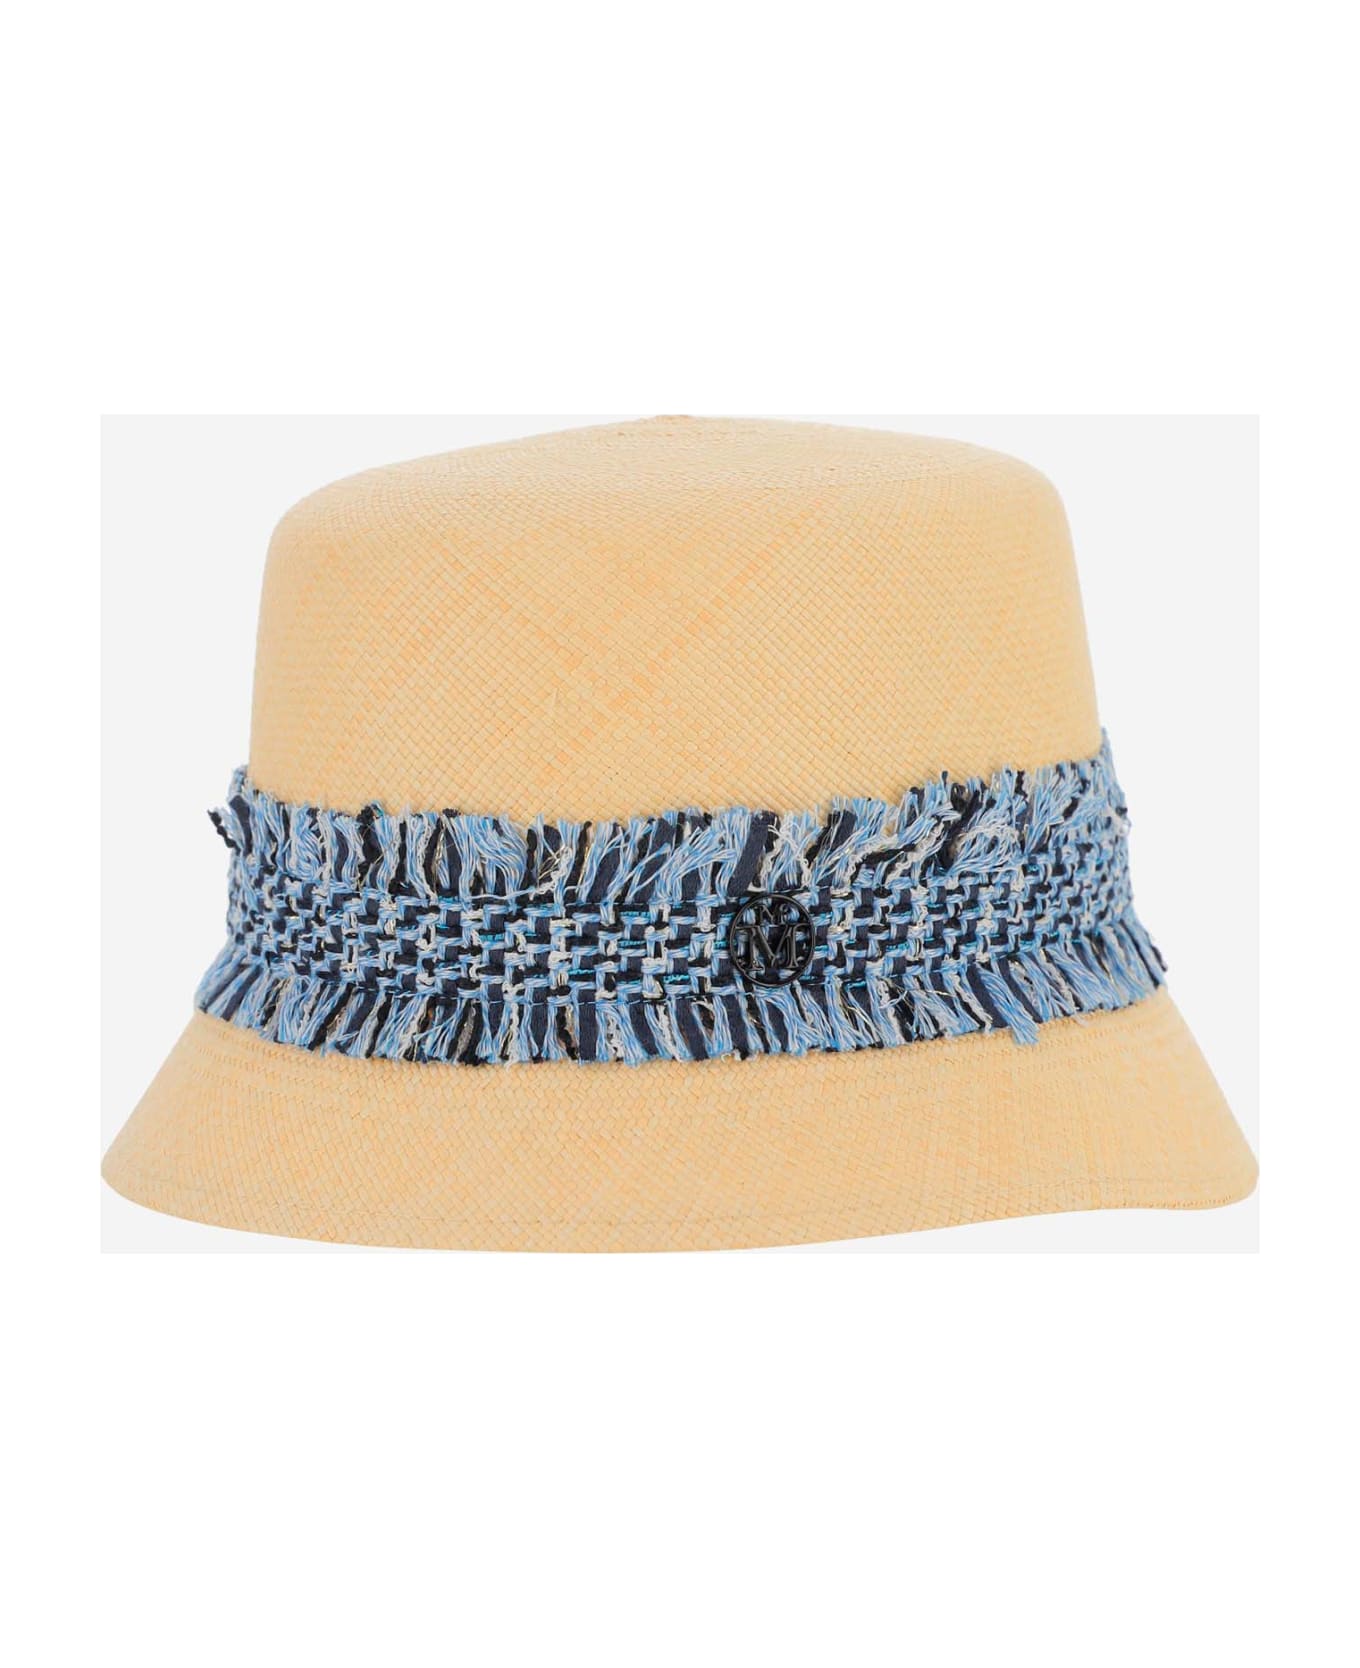 Maison Michel Mini New Kendall Hat - Beige 帽子